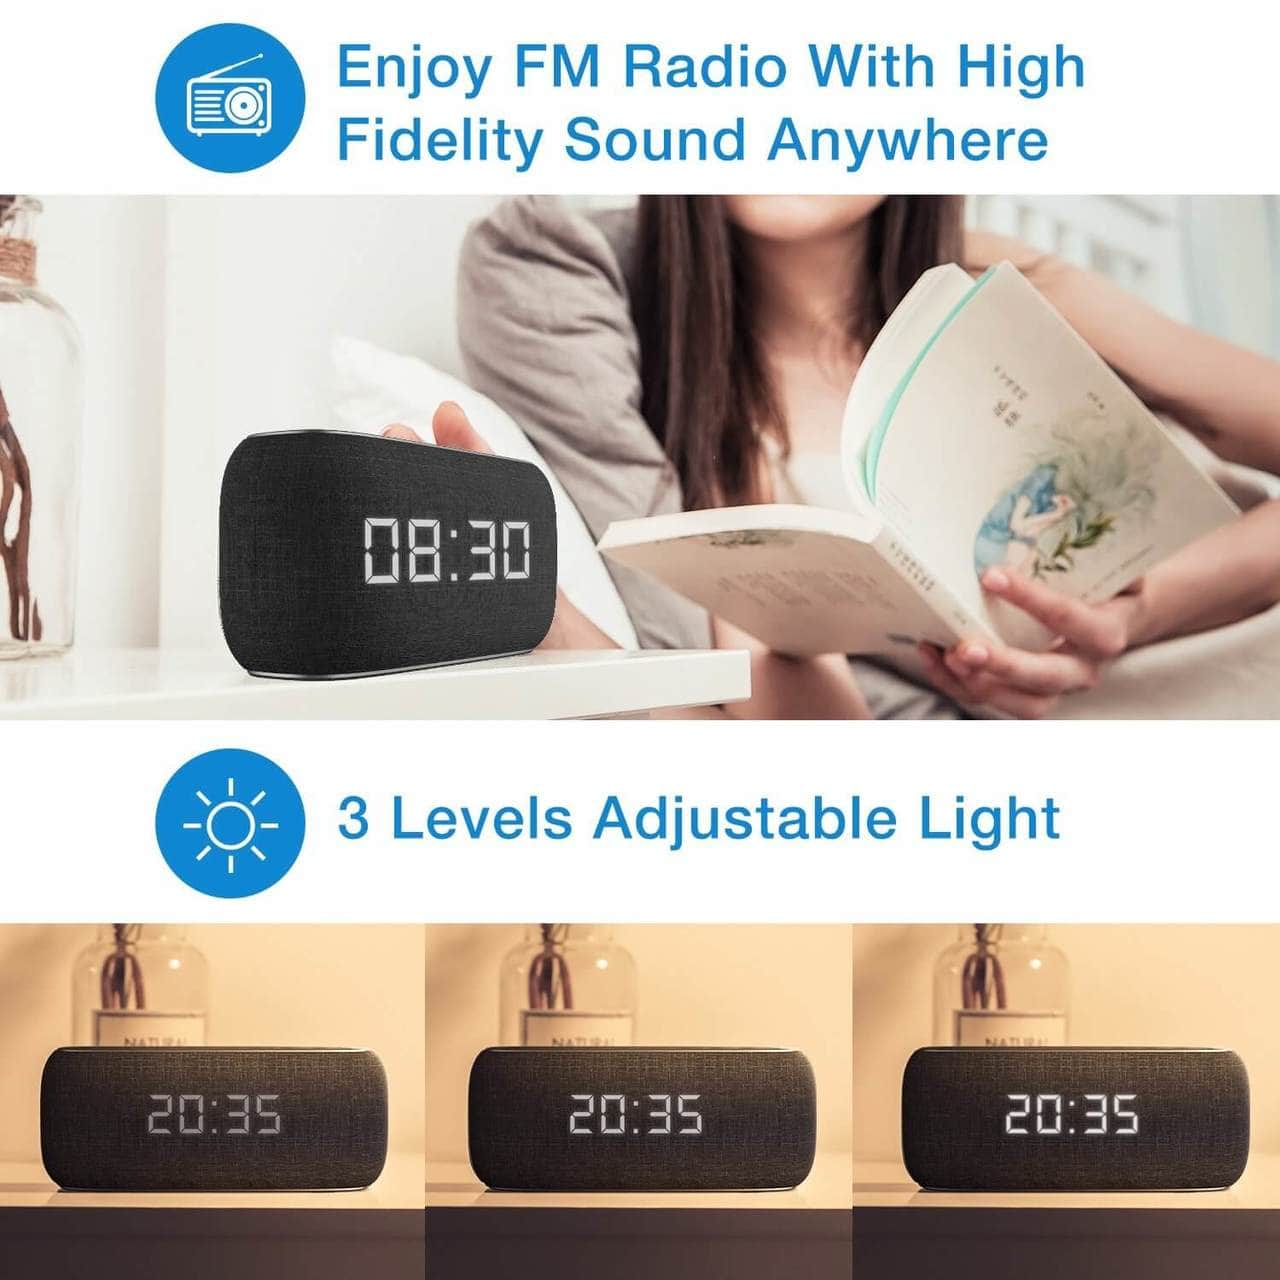 HAVIT M29 Bluetooth-Lautsprecher mit Radio und Uhr